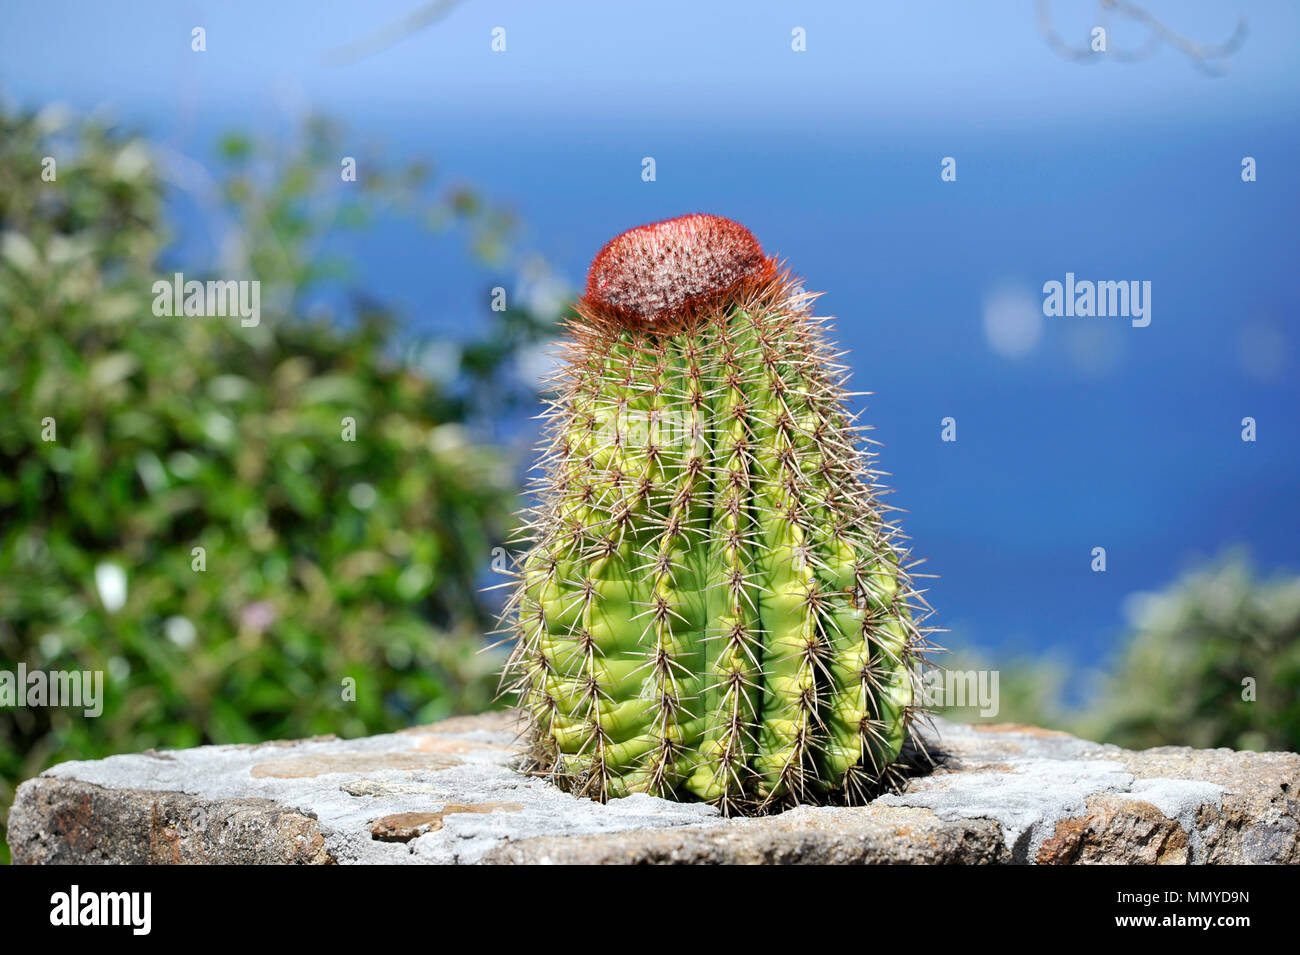 Petites Antilles Antigua îles dans les Caraïbes Antilles - Cactus Banque D'Images